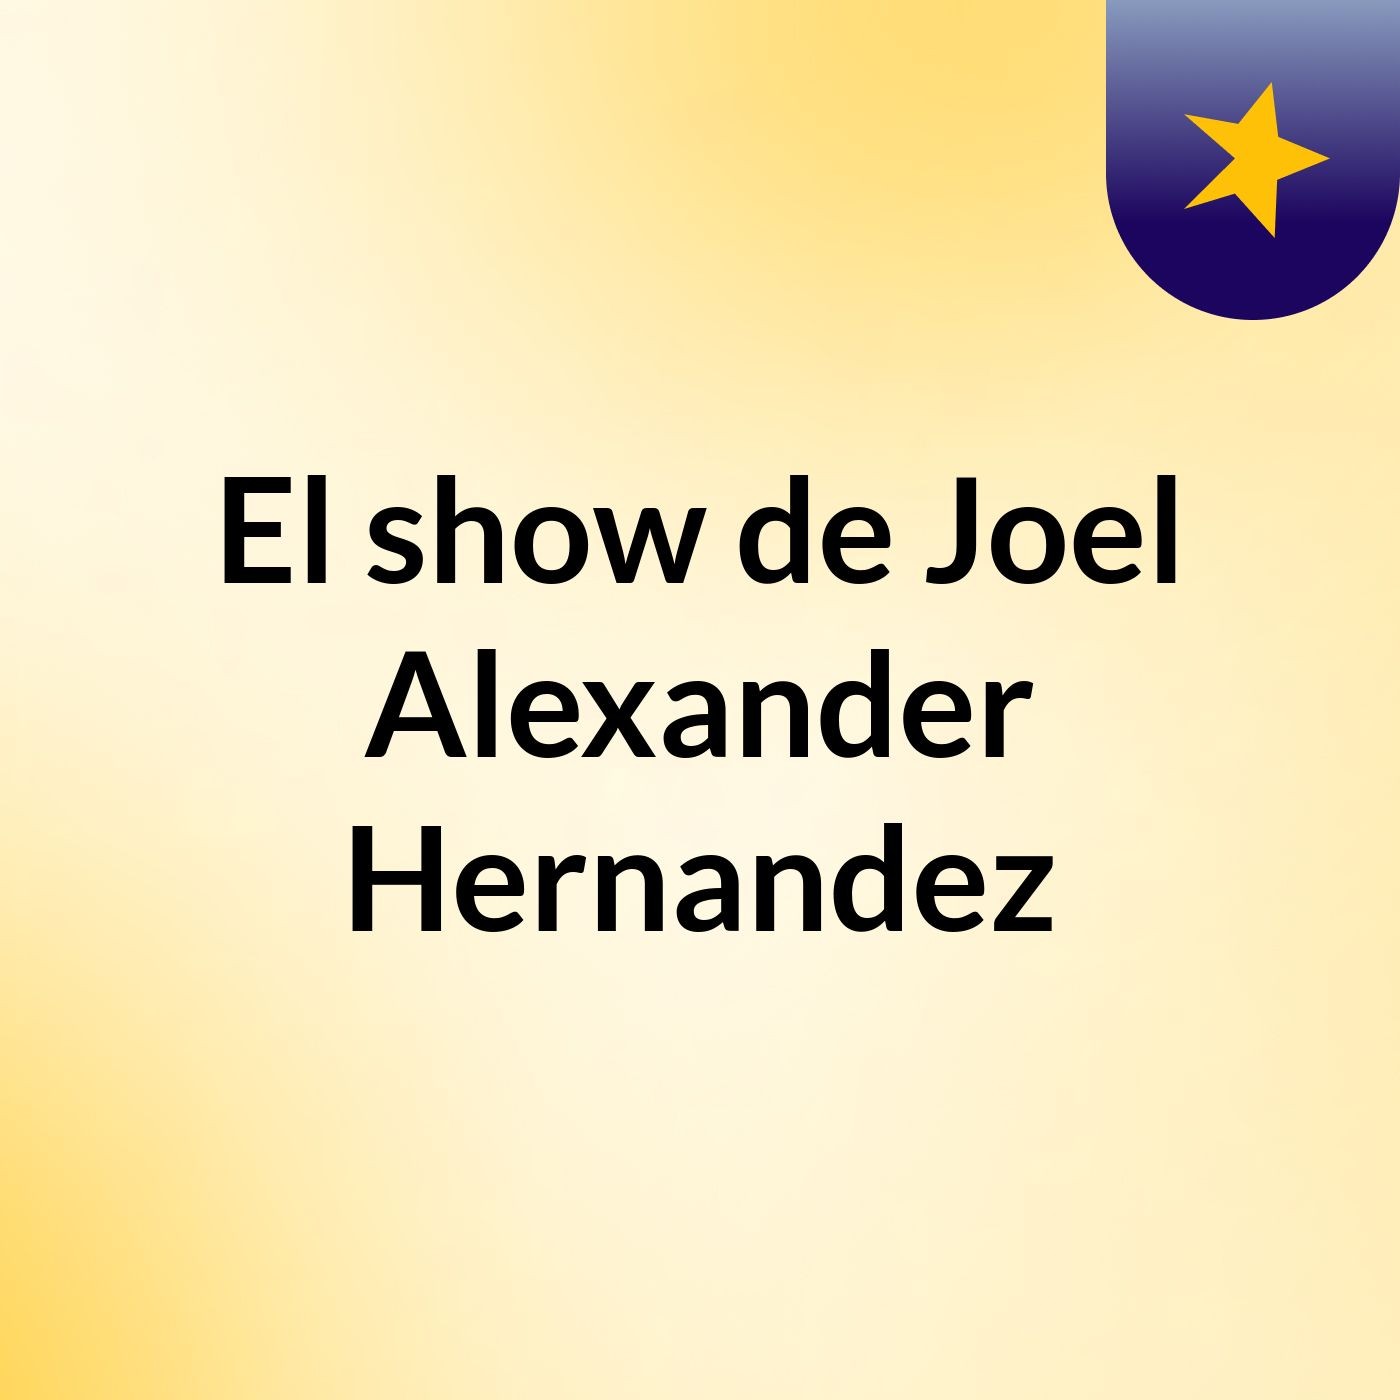 El show de Joel Alexander Hernandez